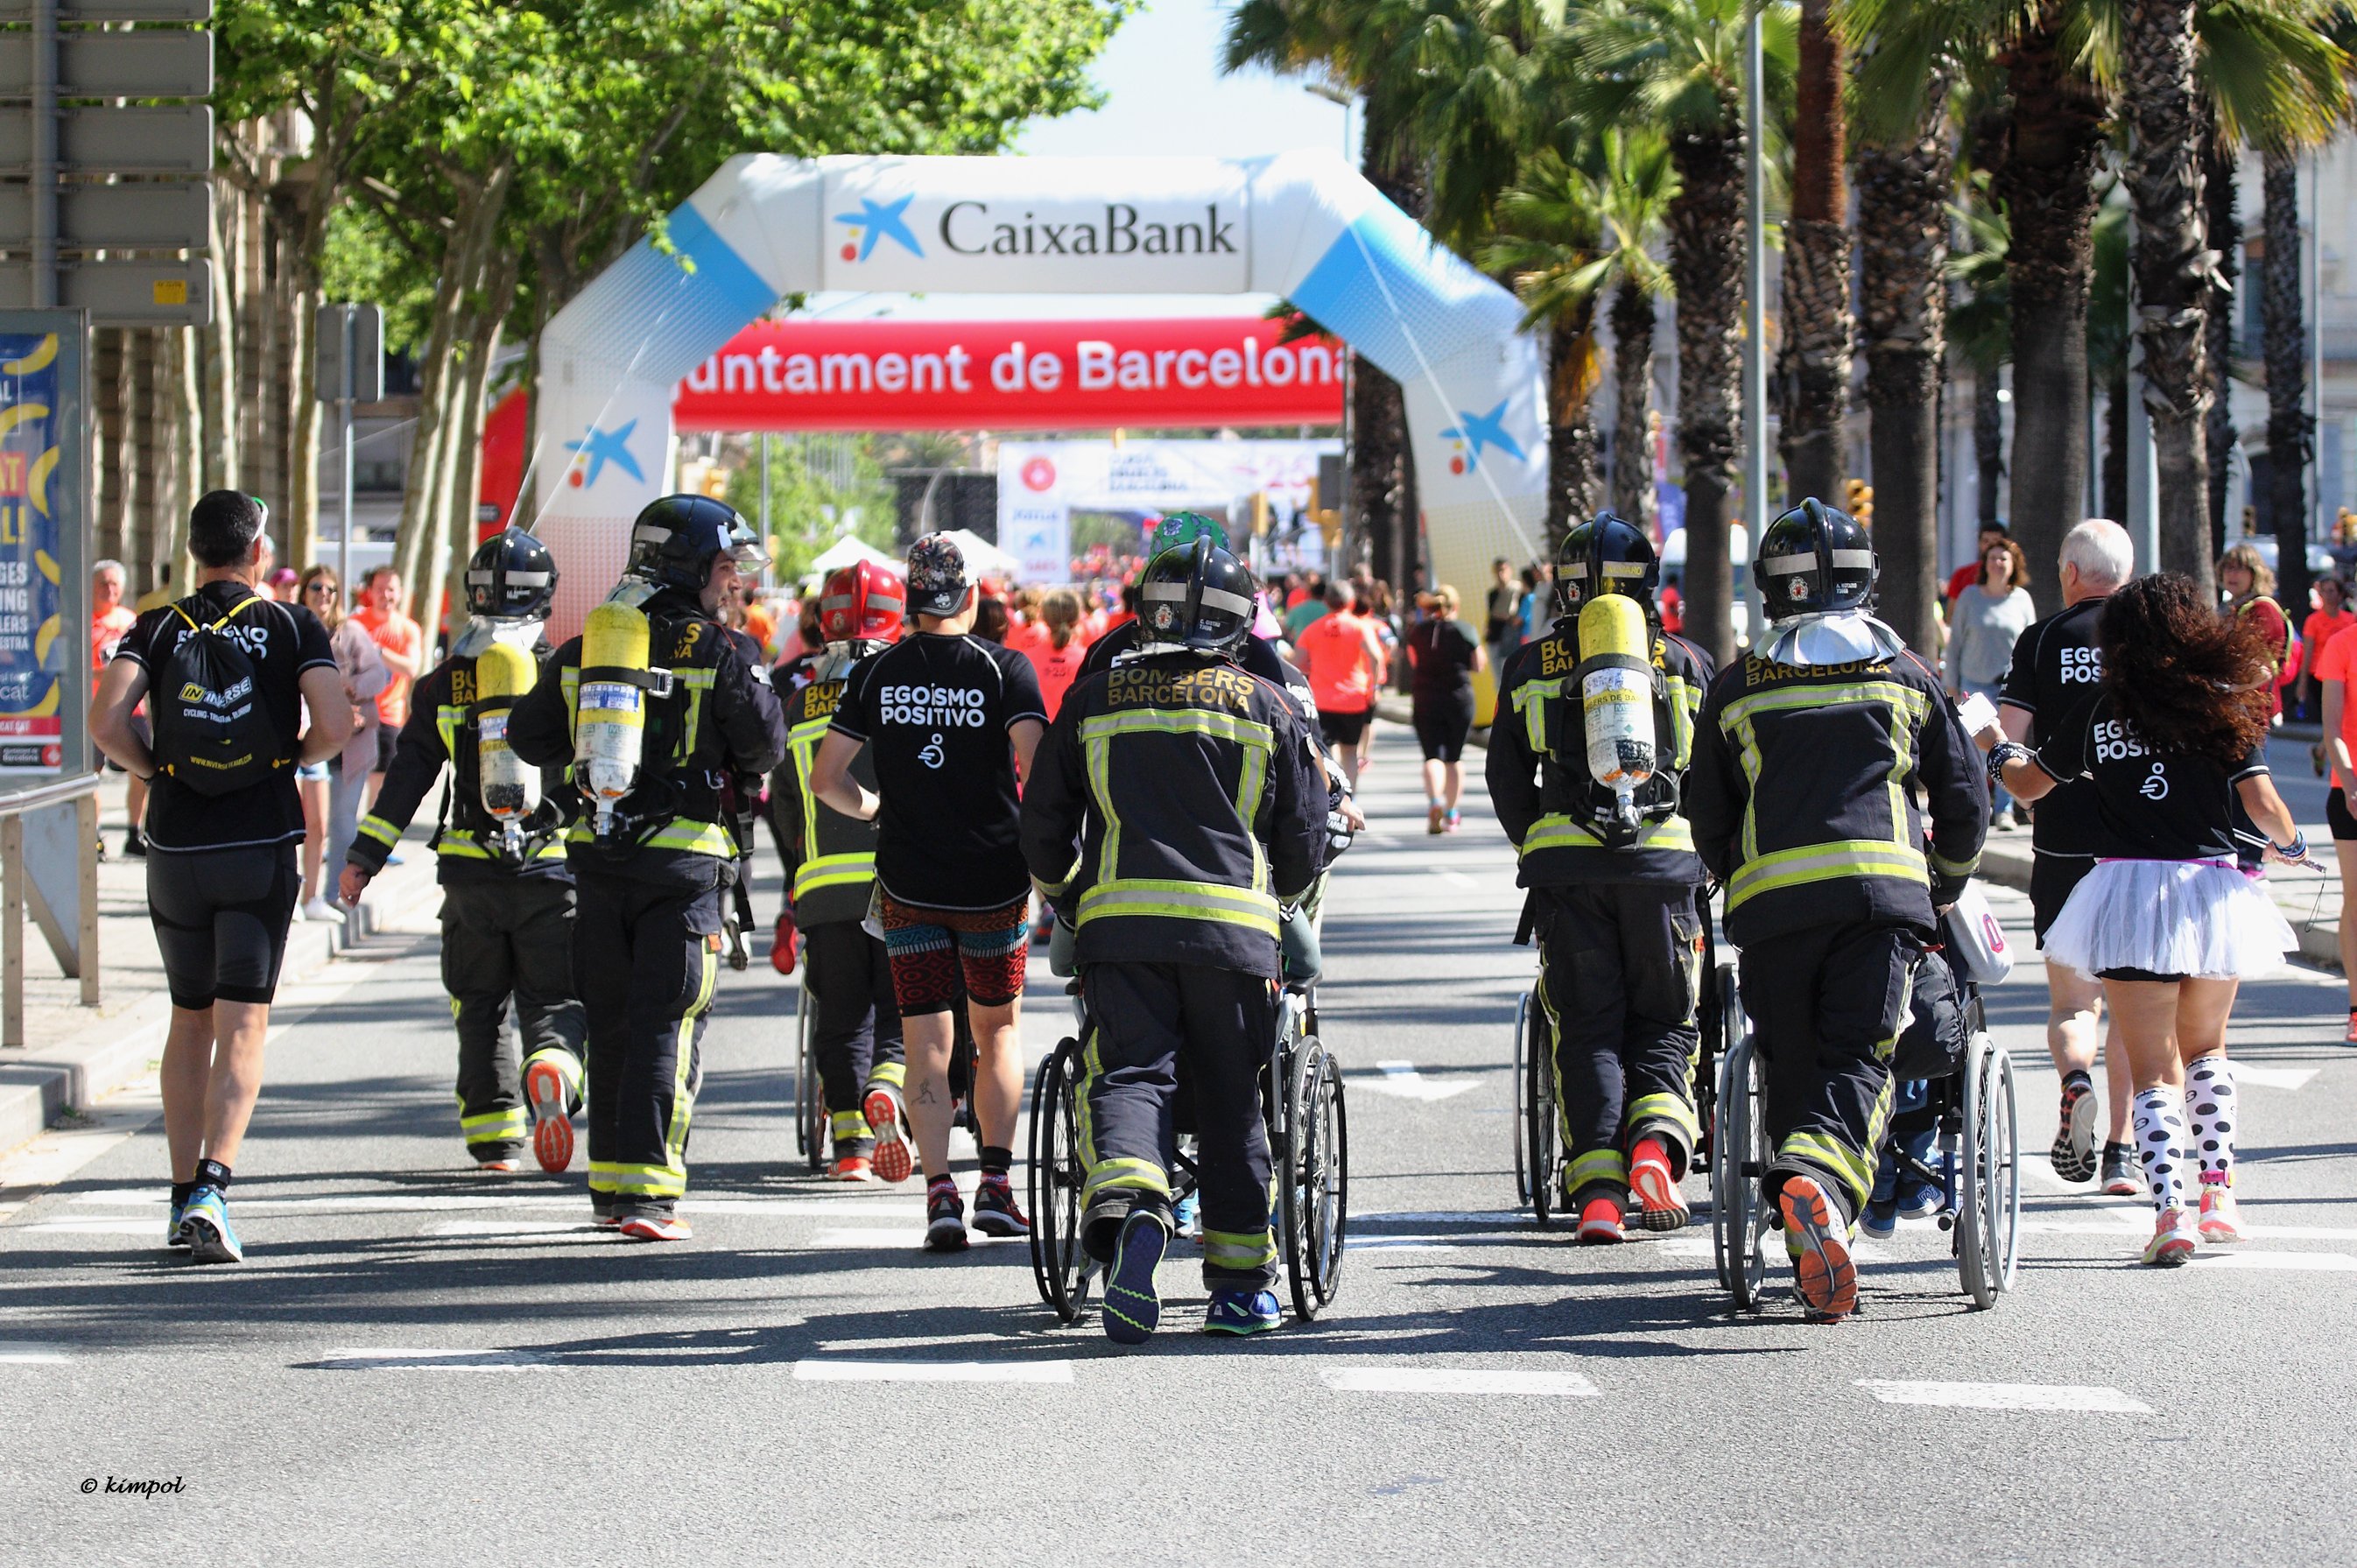 CaixaBank renova el patrocini amb la Cursa de Bombers de Barcelona